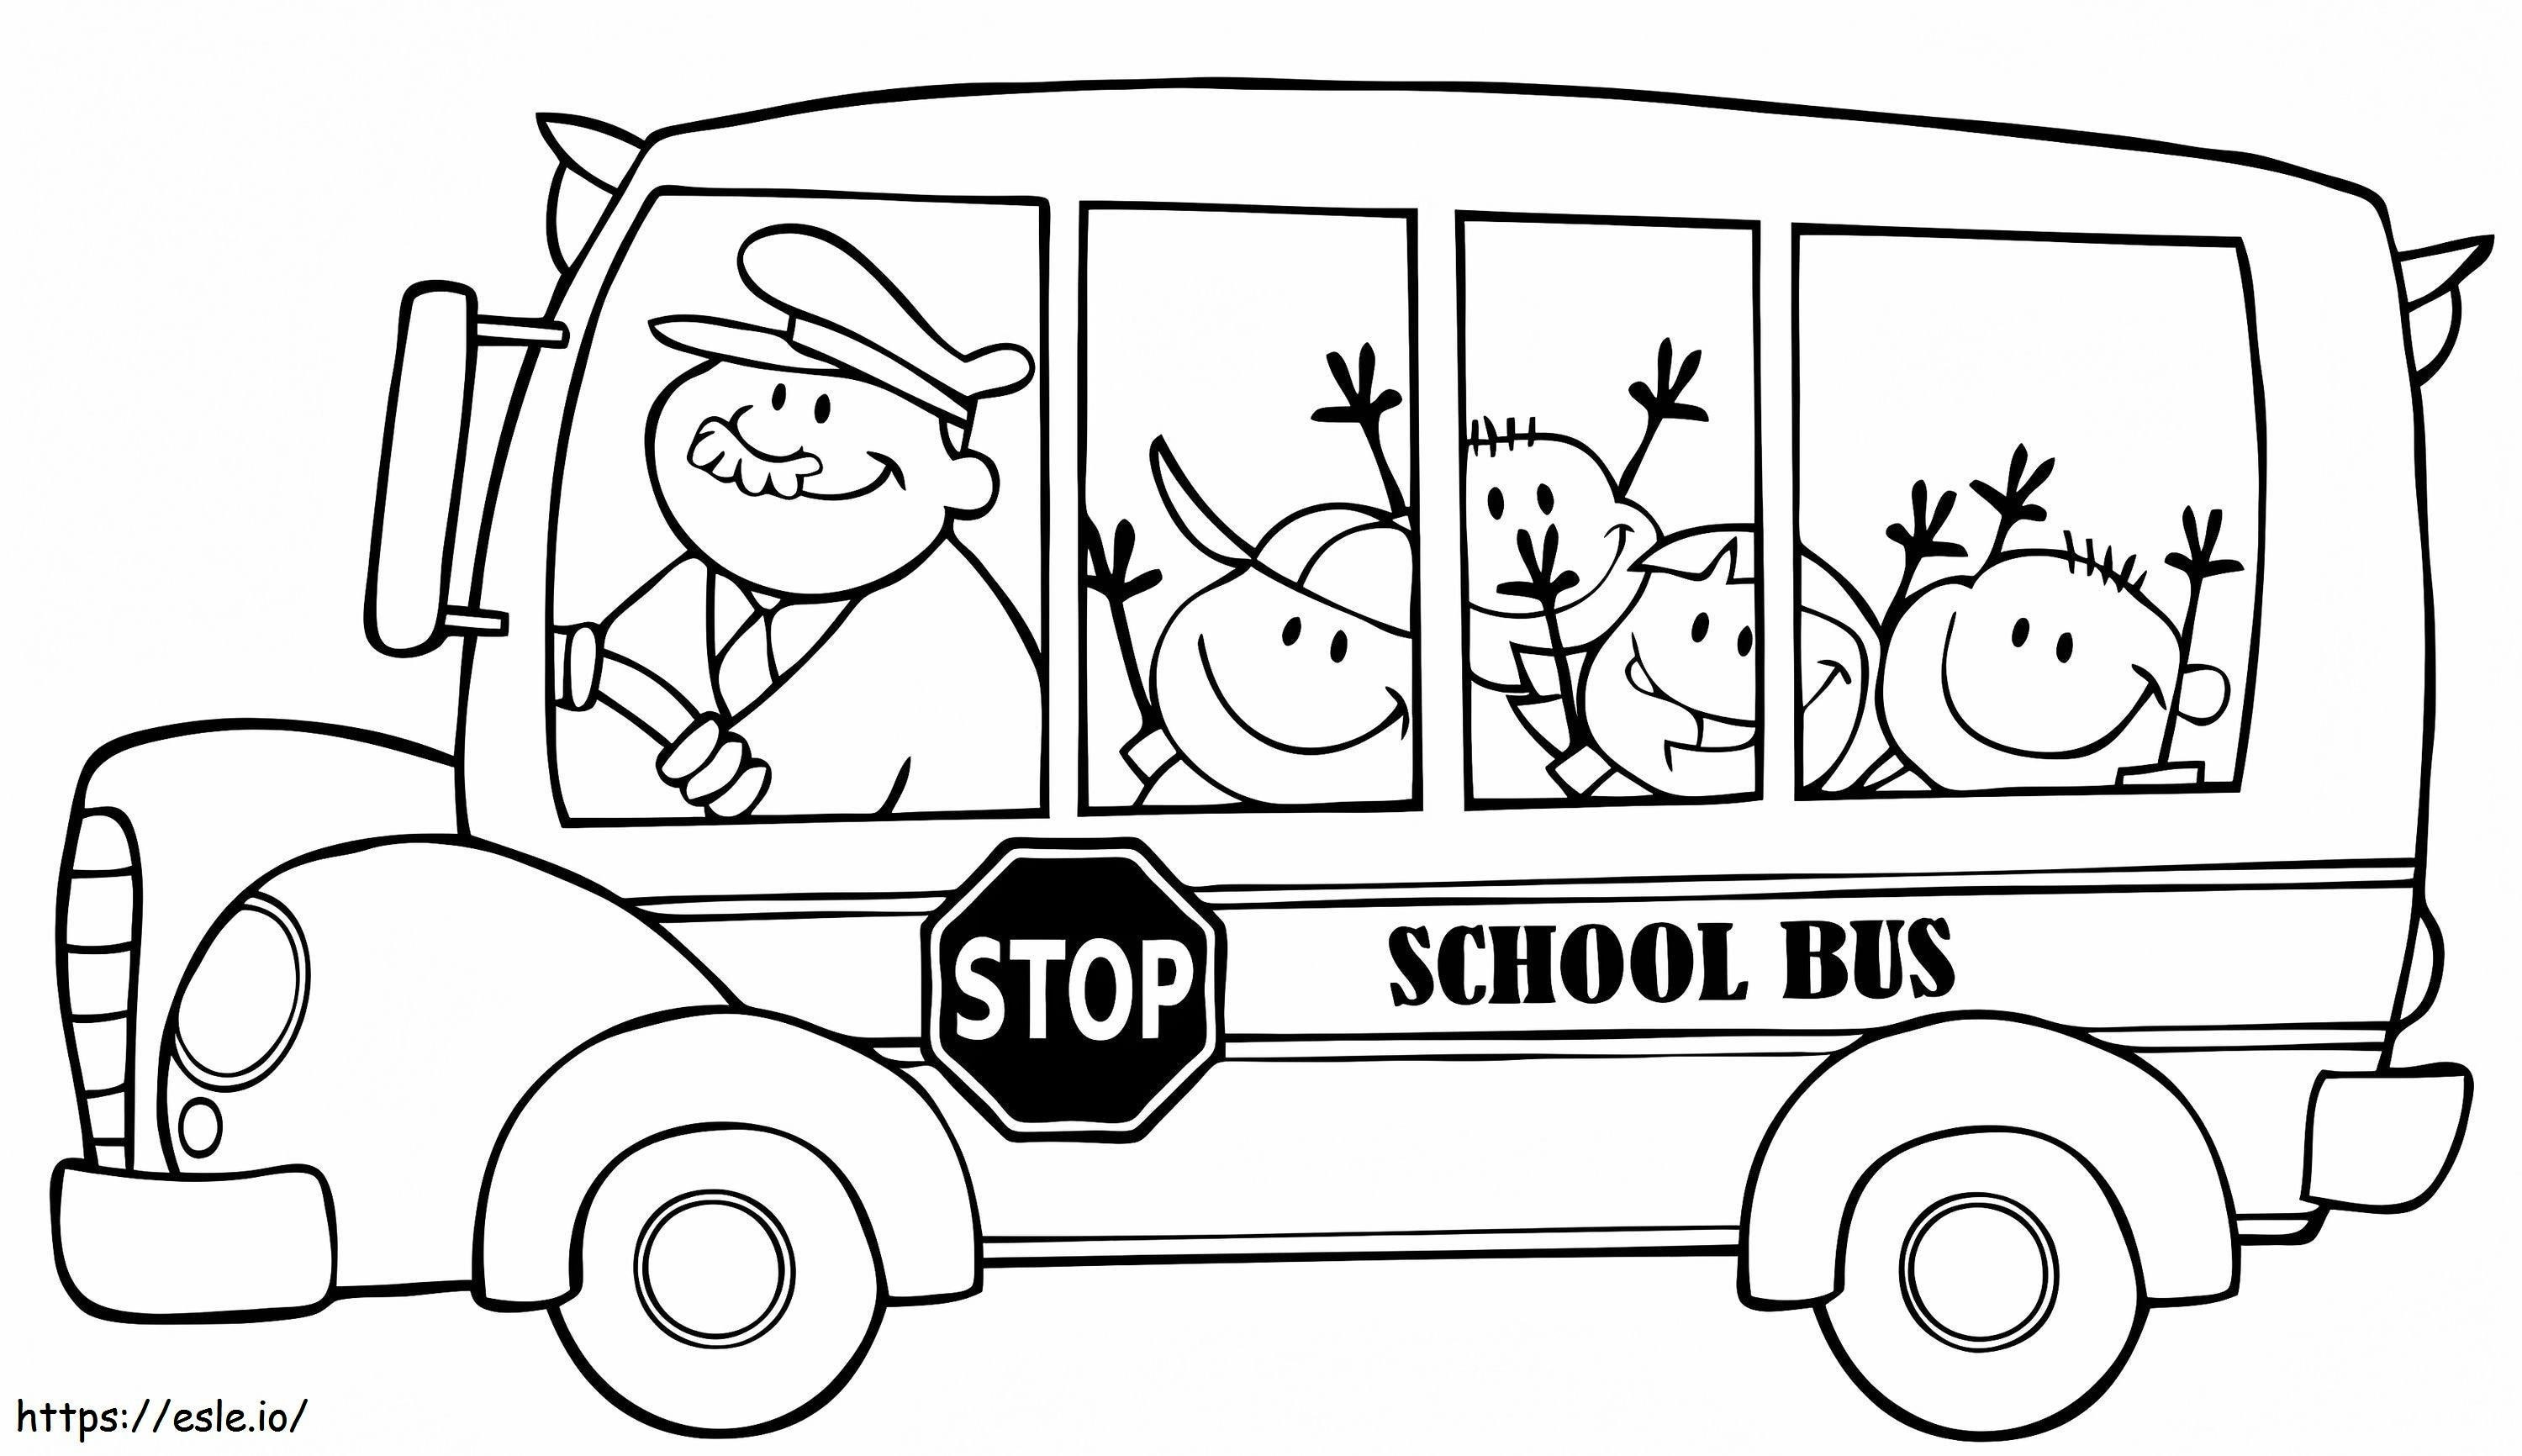 1560589158 School Bus A4 coloring page